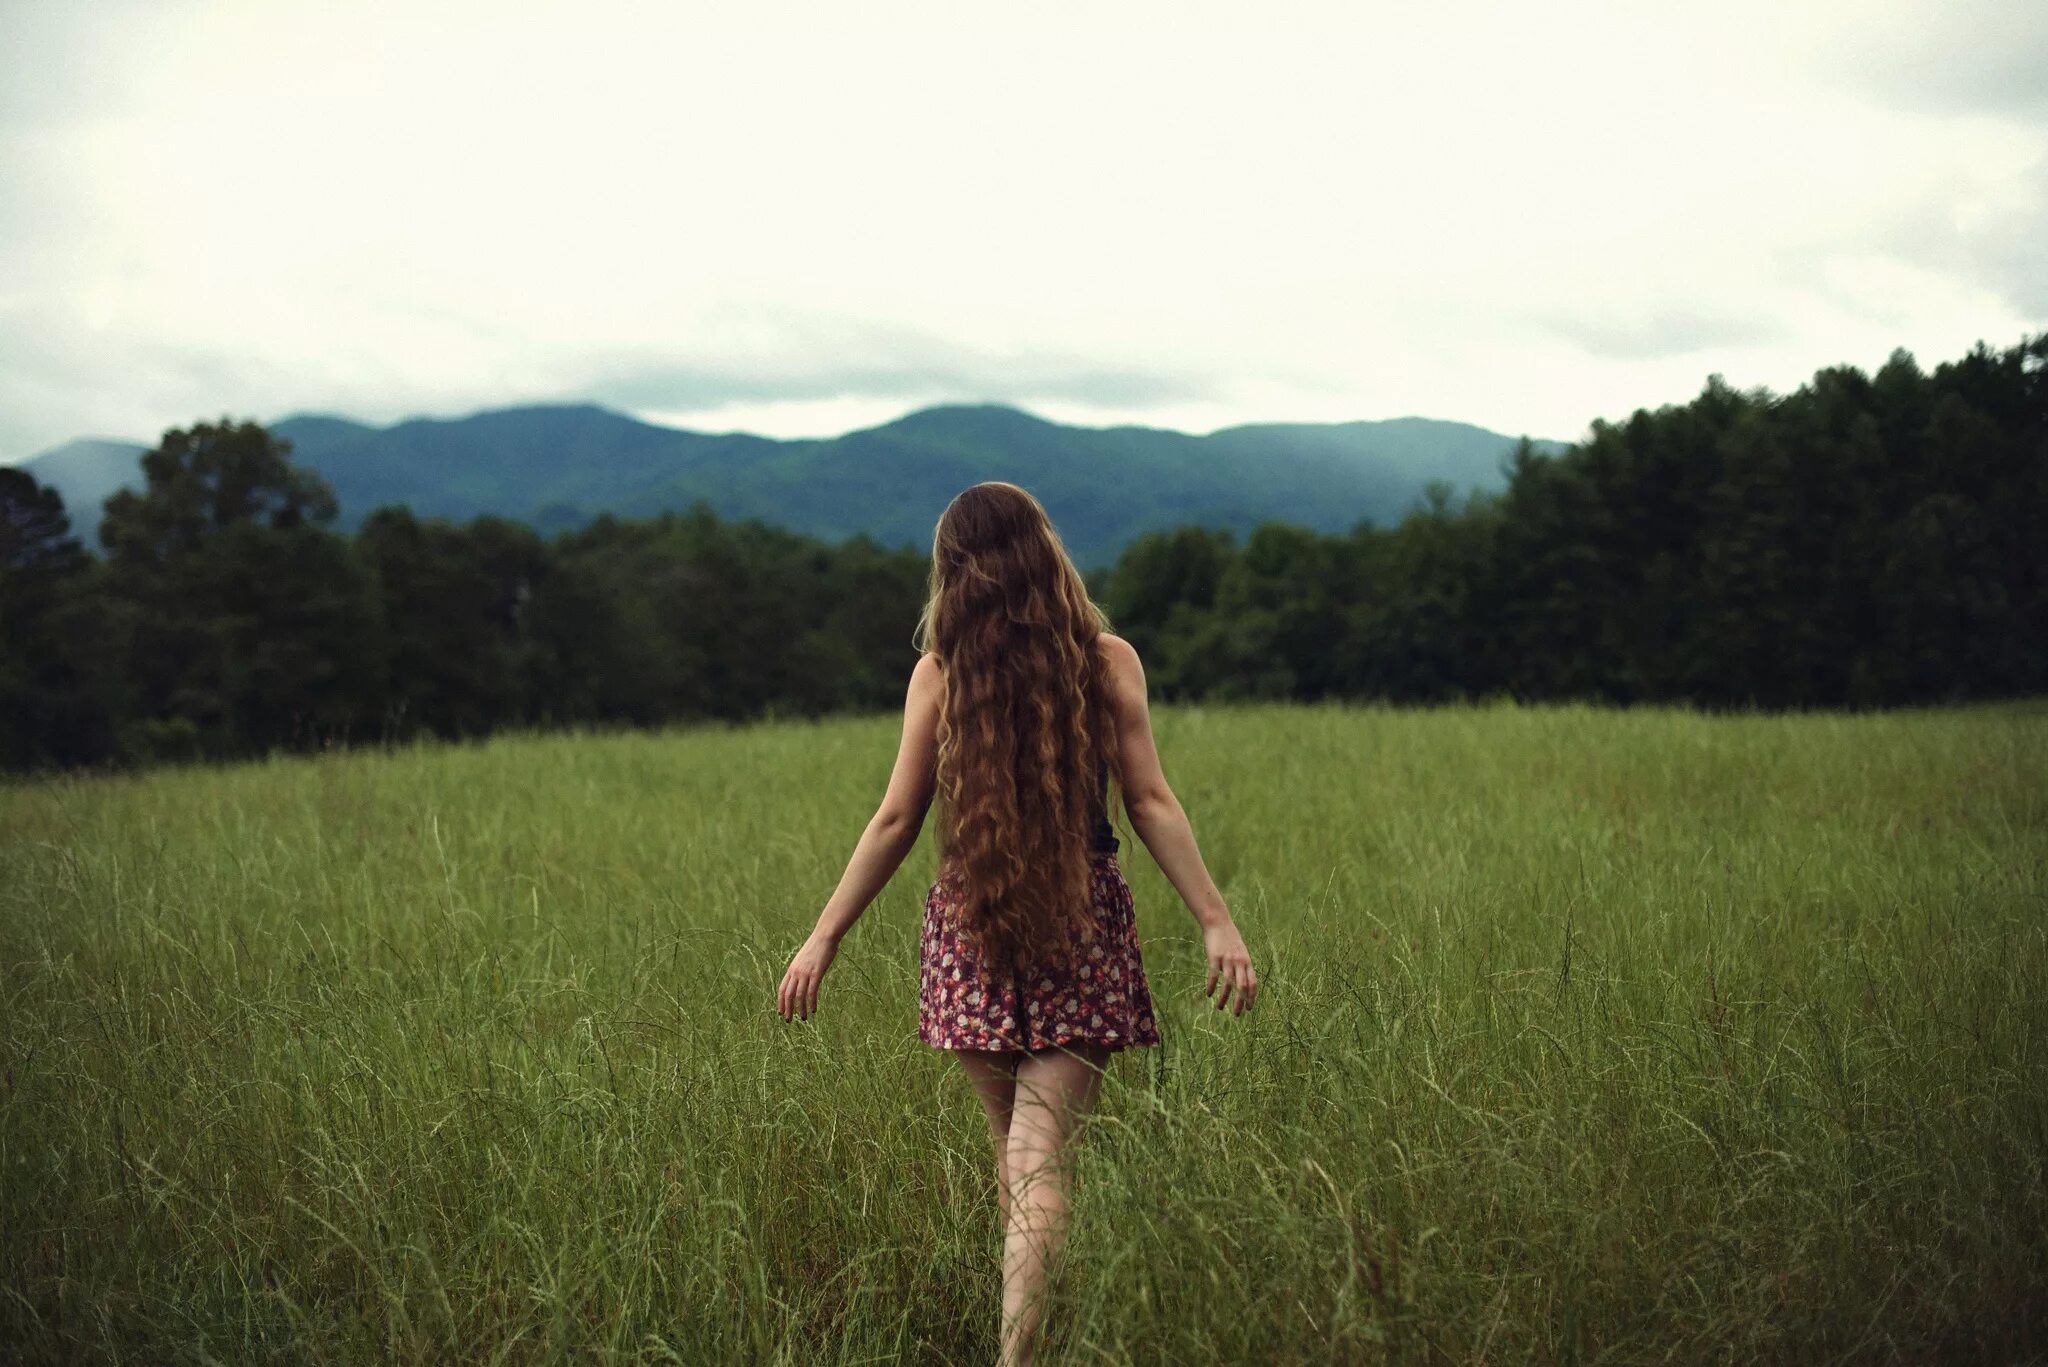 Стоящие картинки. Девушка на природе. Девушка с длинными волосами на природе. Девушка на природе со спины. Девочка на природе спиной.